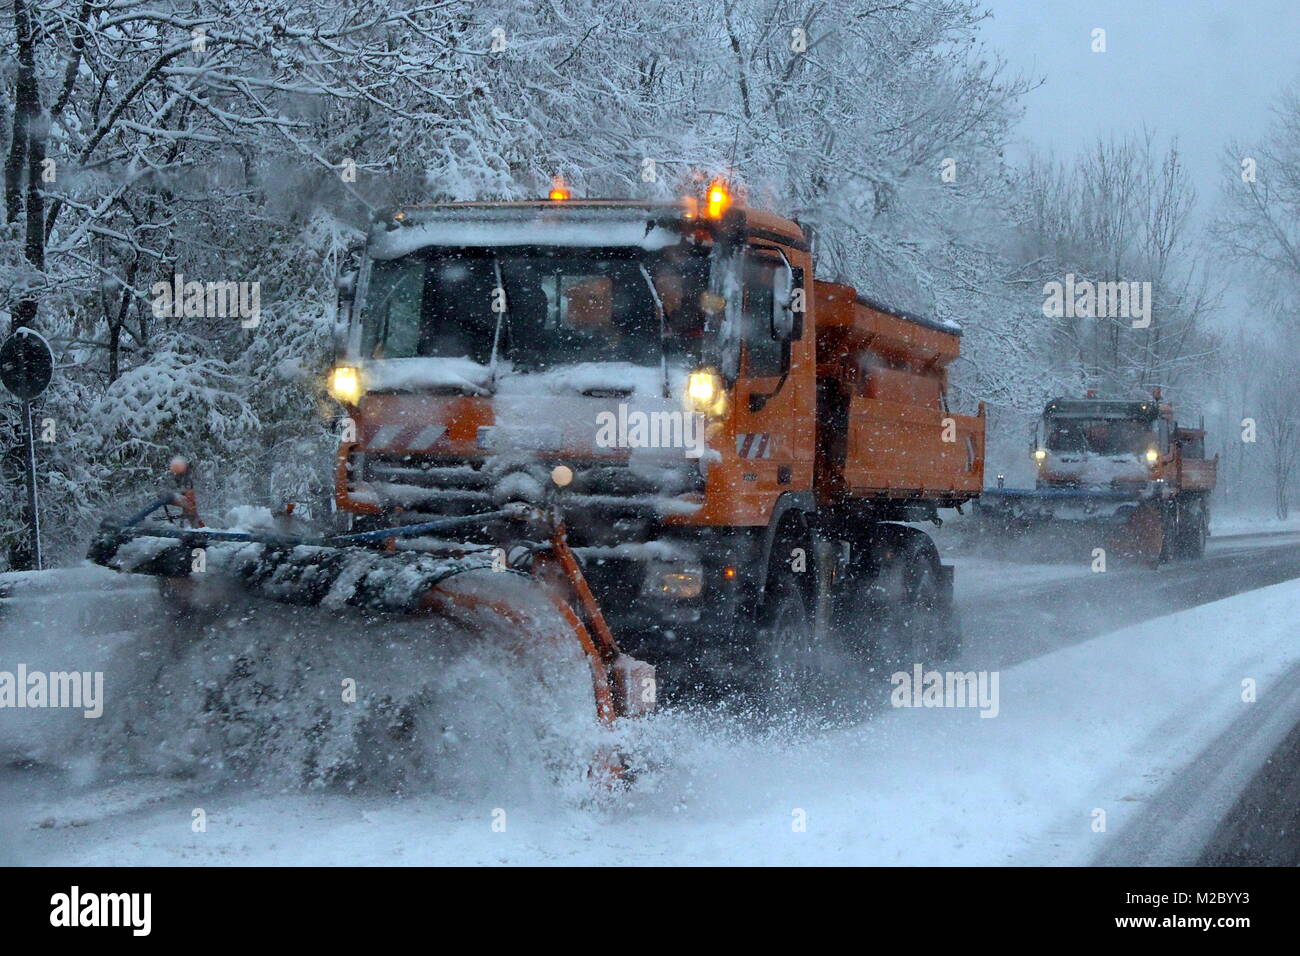 Winterdienst Schneeräumung industrielle Auto Nacht Stockfotografie - Alamy